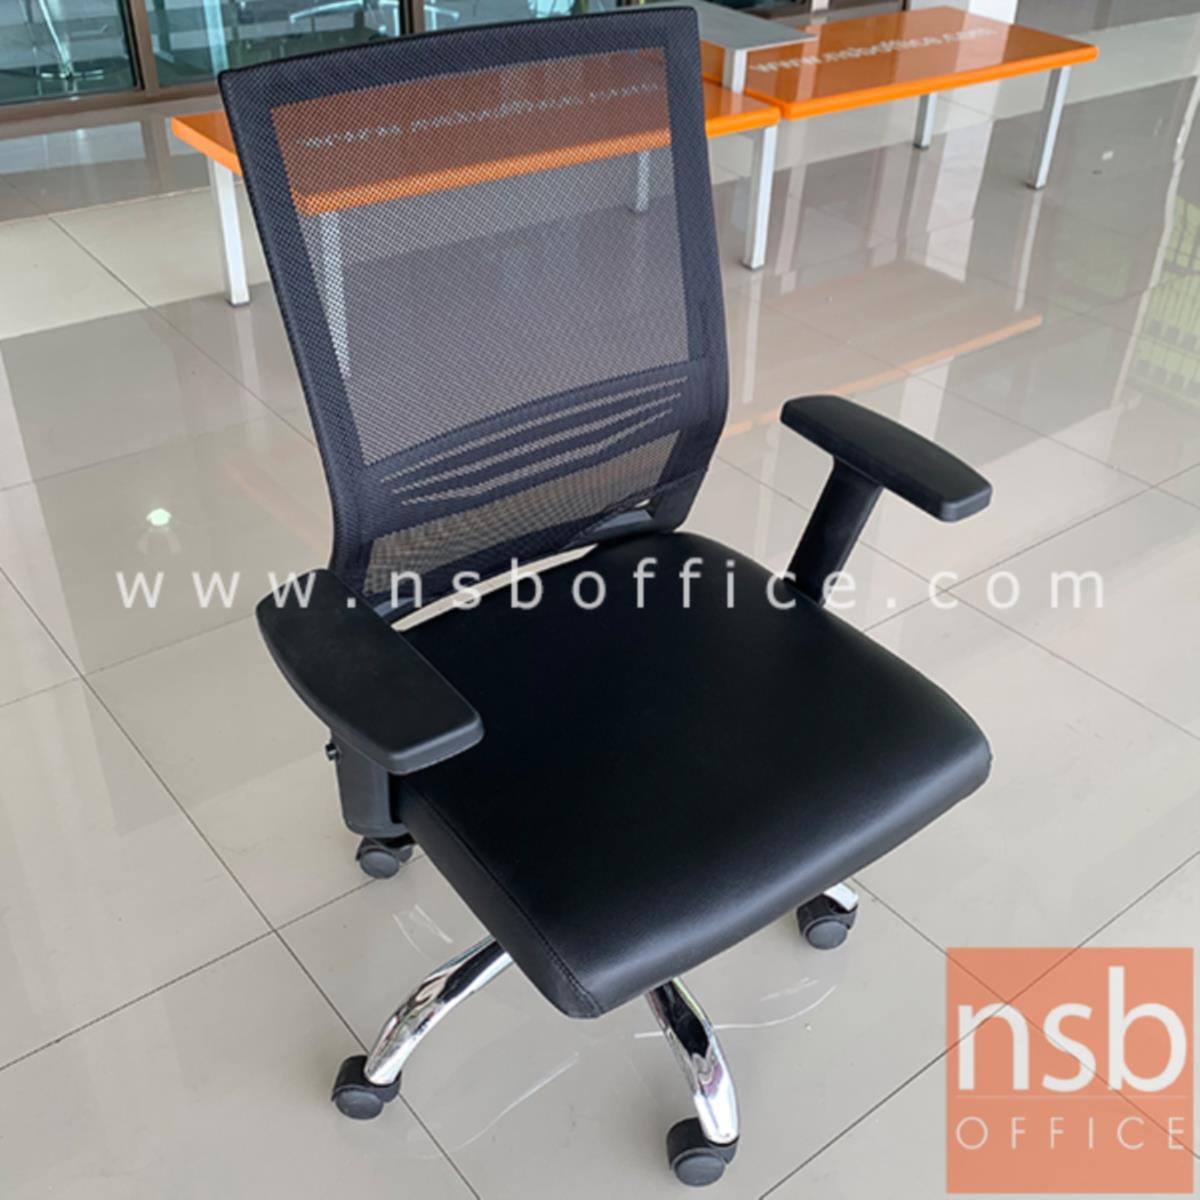 เก้าอี้สำนักงานหลังเน็ต รุ่น Rafael (ราฟาเอล) โช๊คแก๊ส มีก้อนโยก  มี lumbar support ที่นั่งหุ้มหนังเทียมสีดำ